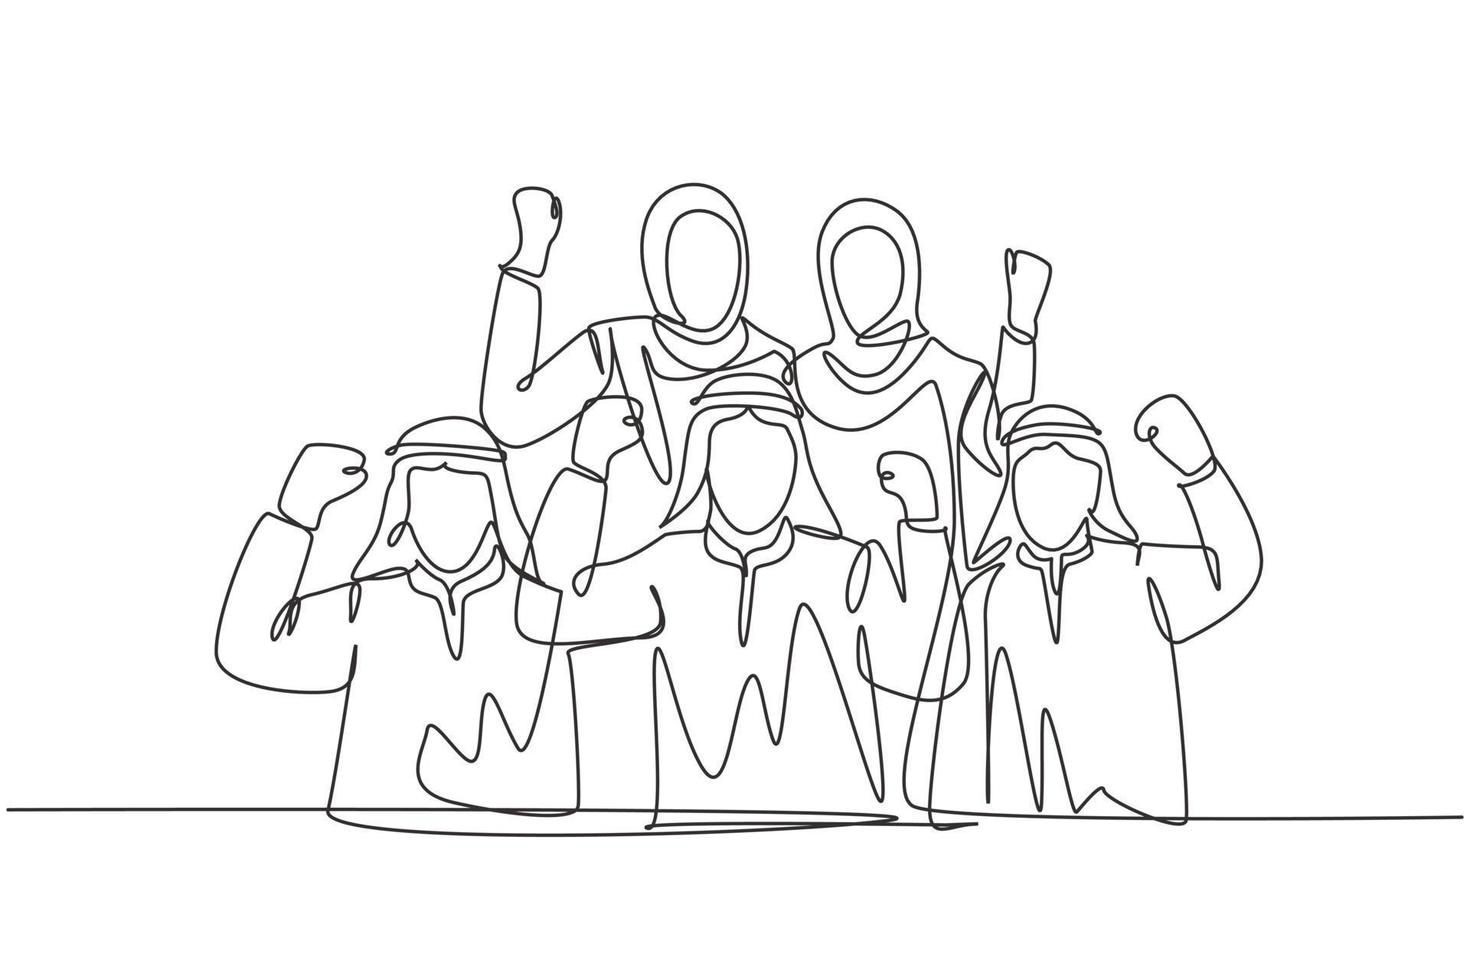 il disegno a linea continua del giovane team di vendita musulmano celebra il loro solido lavoro di squadra. uomini d'affari arabi mediorientali con shmagh, kandura, thawb, panno per accappatoi. illustrazione vettoriale di disegno di una linea di disegno